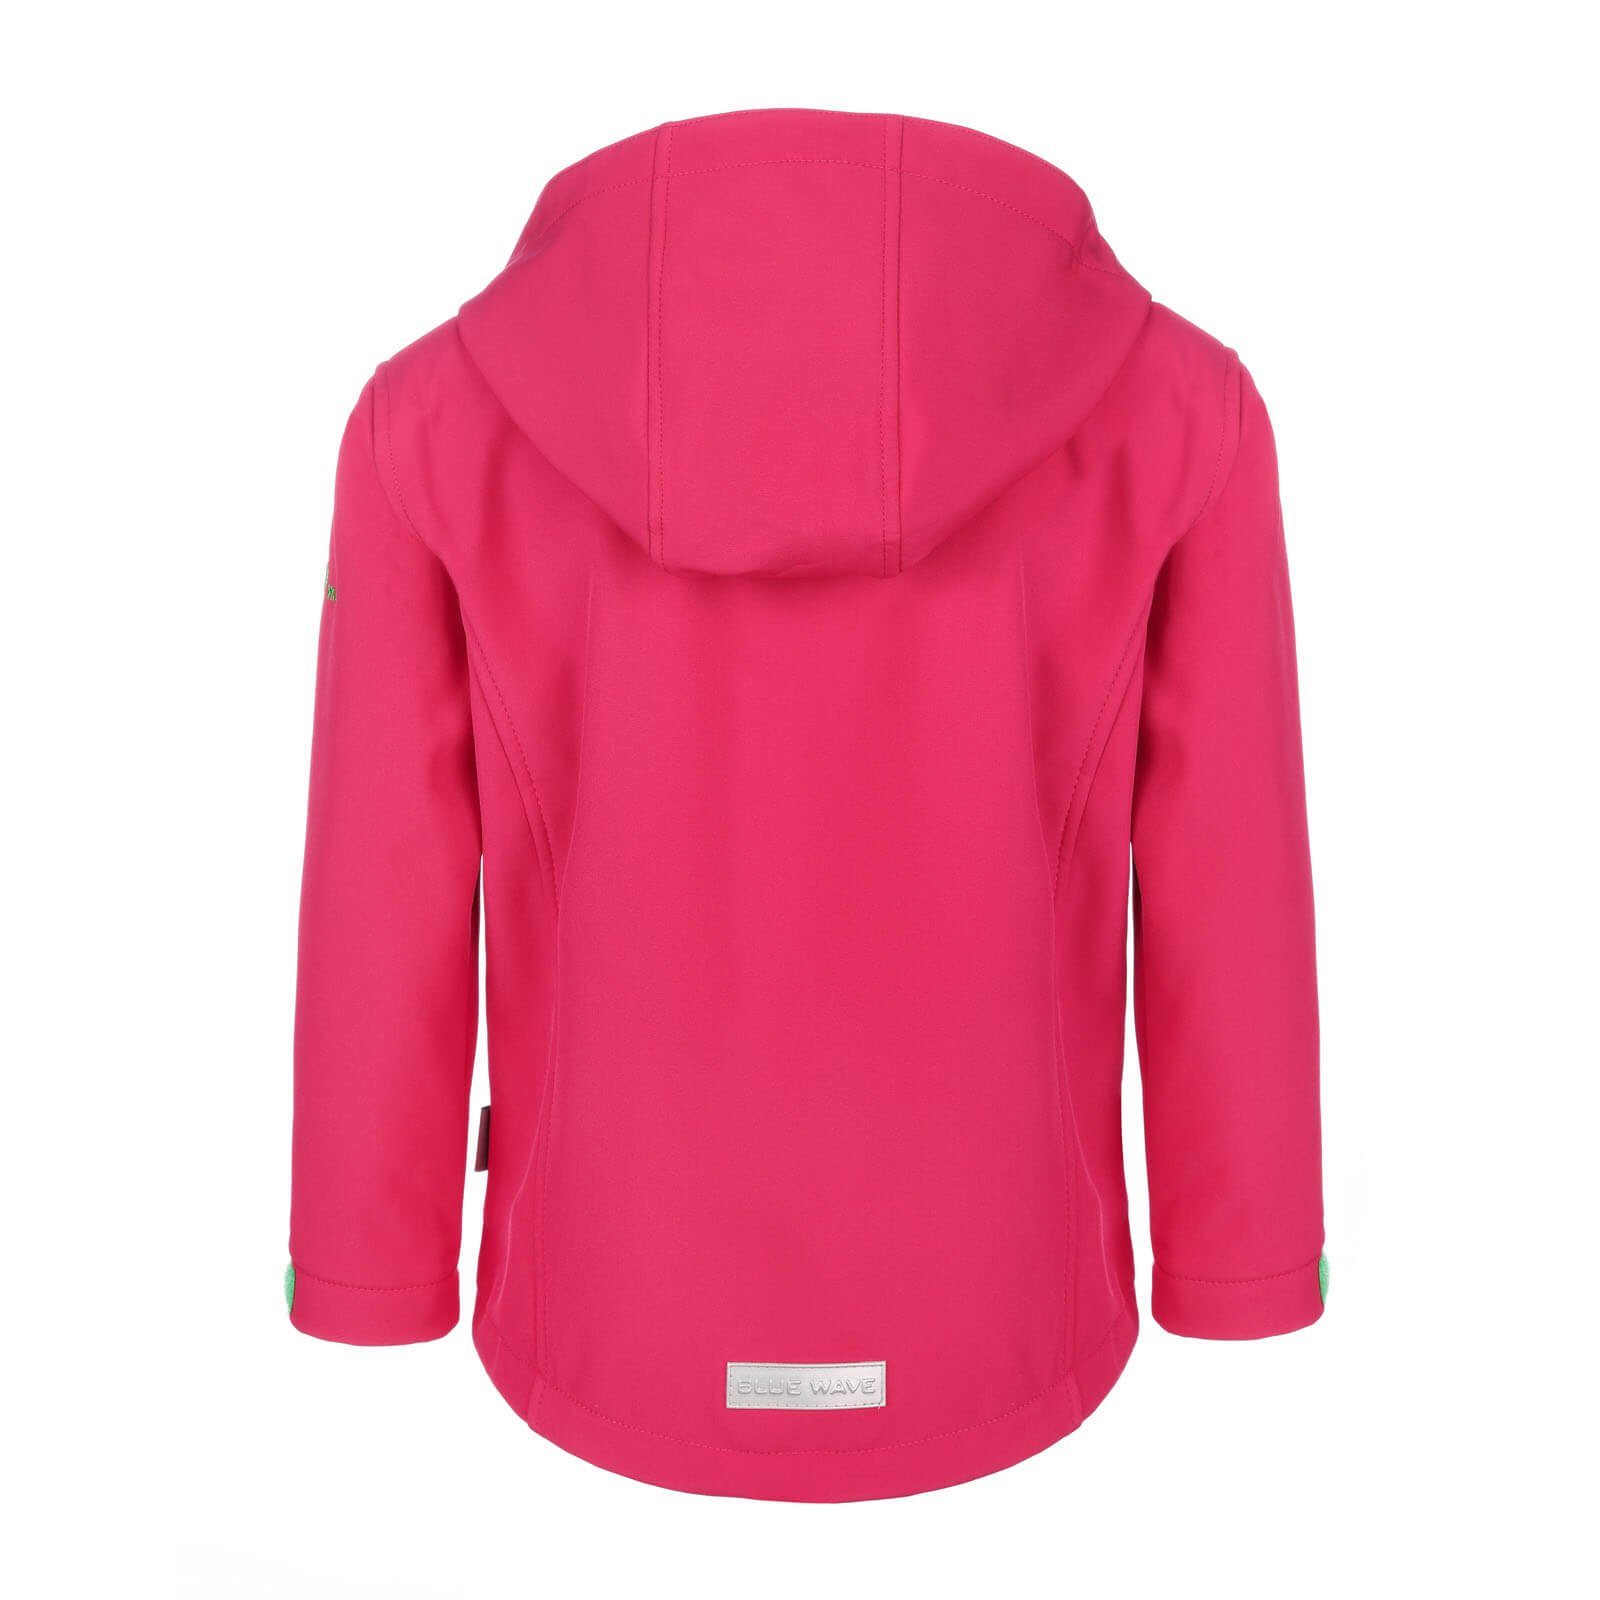 Jacke pink Bonnie Wave & - Softshelljacke / Blue Winddicht Kinder Atmungsaktiv Outdoor-Jacke weiß Mädchen